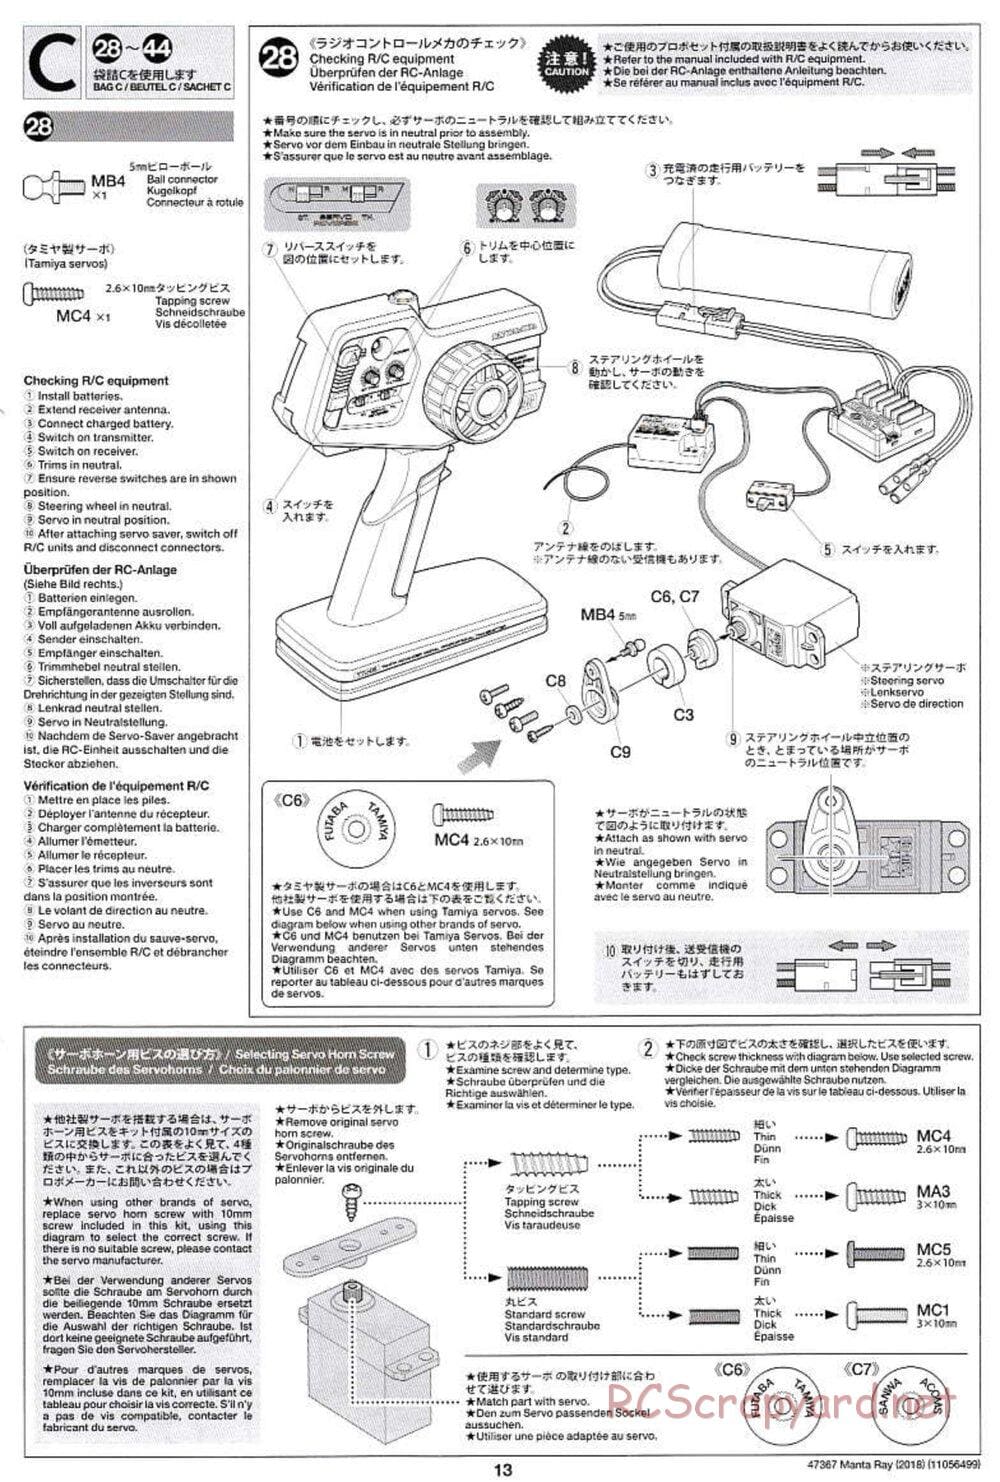 Tamiya - Manta Ray 2018 - DF-01 Chassis - Manual - Page 13